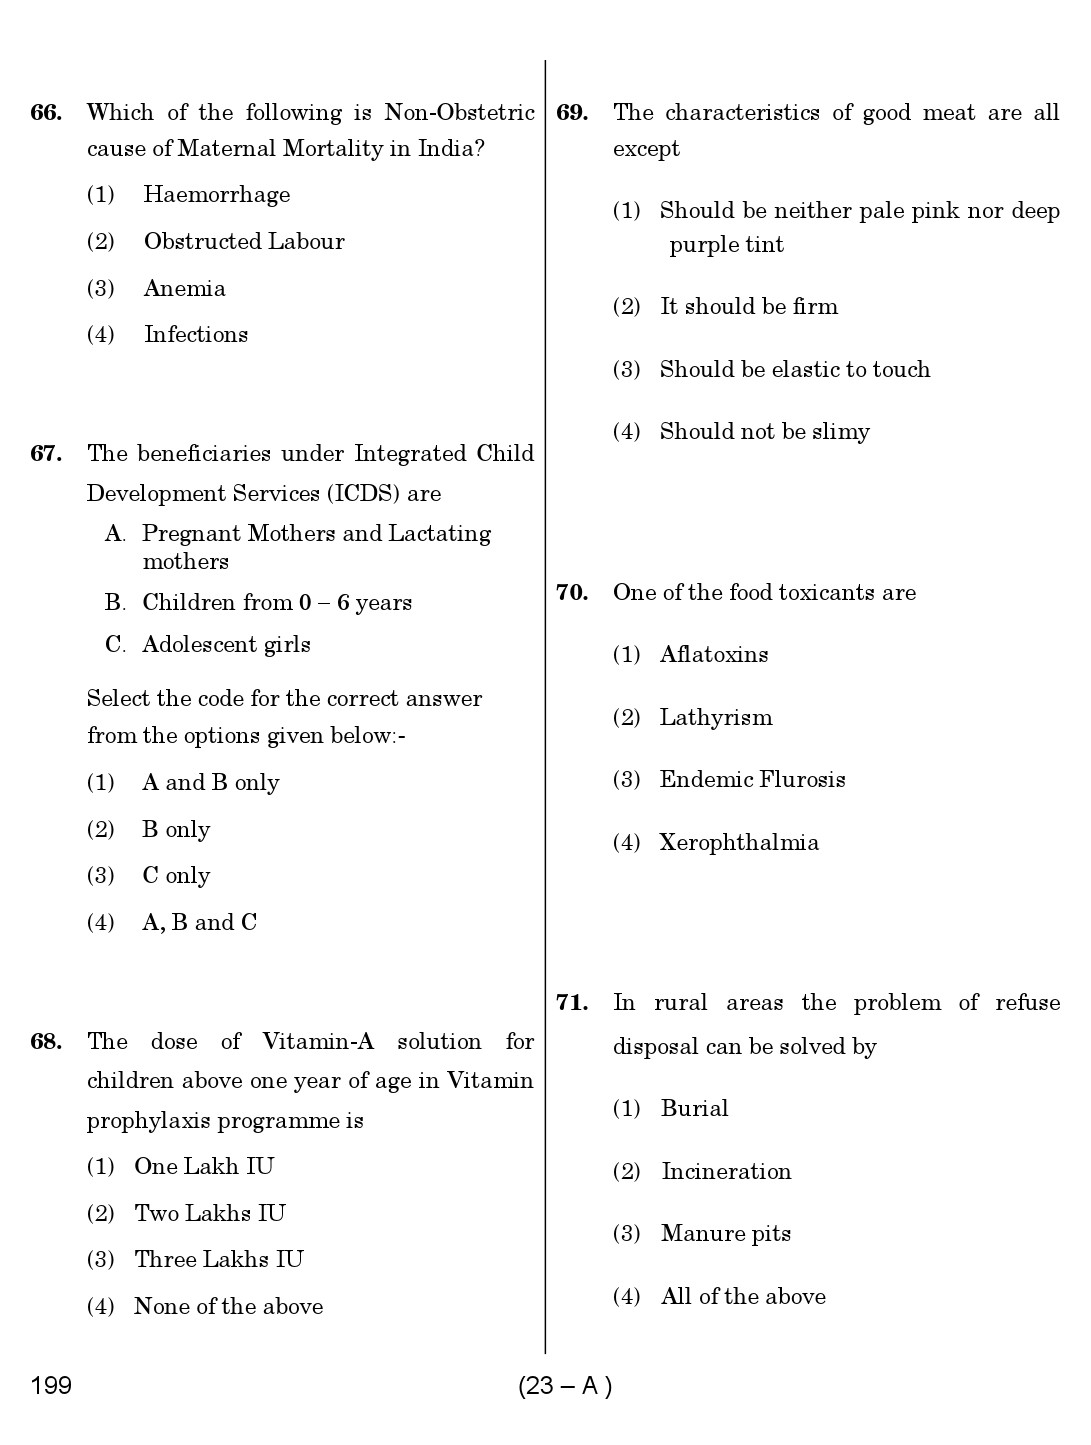 Karnataka PSC Junior Health Inspector Exam Sample Question Paper 23